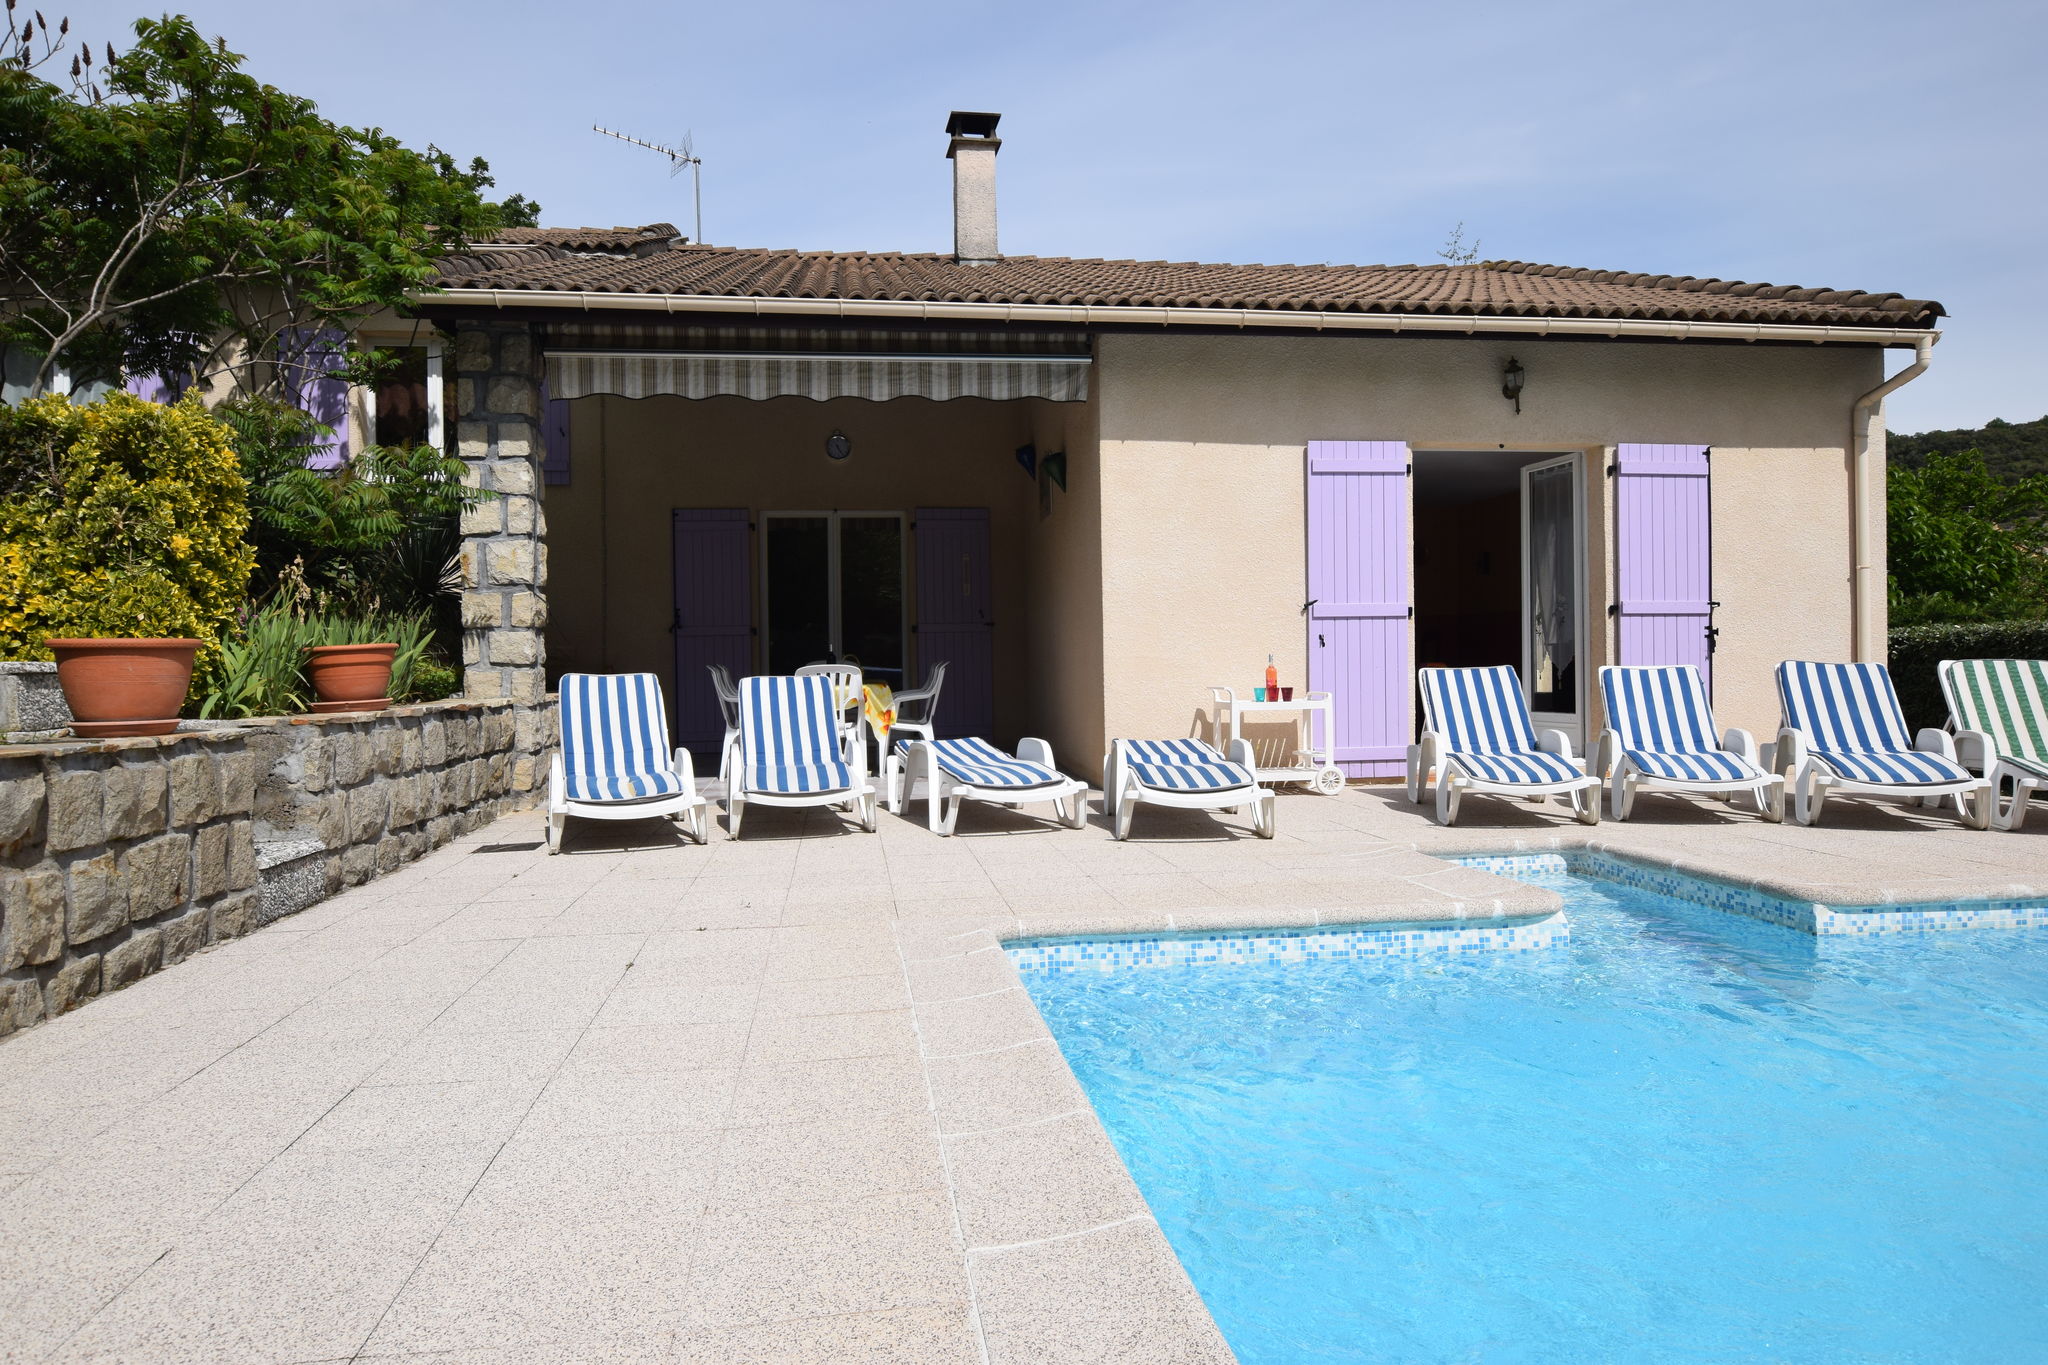 Detached villa in a small villa estate with private swimming pool